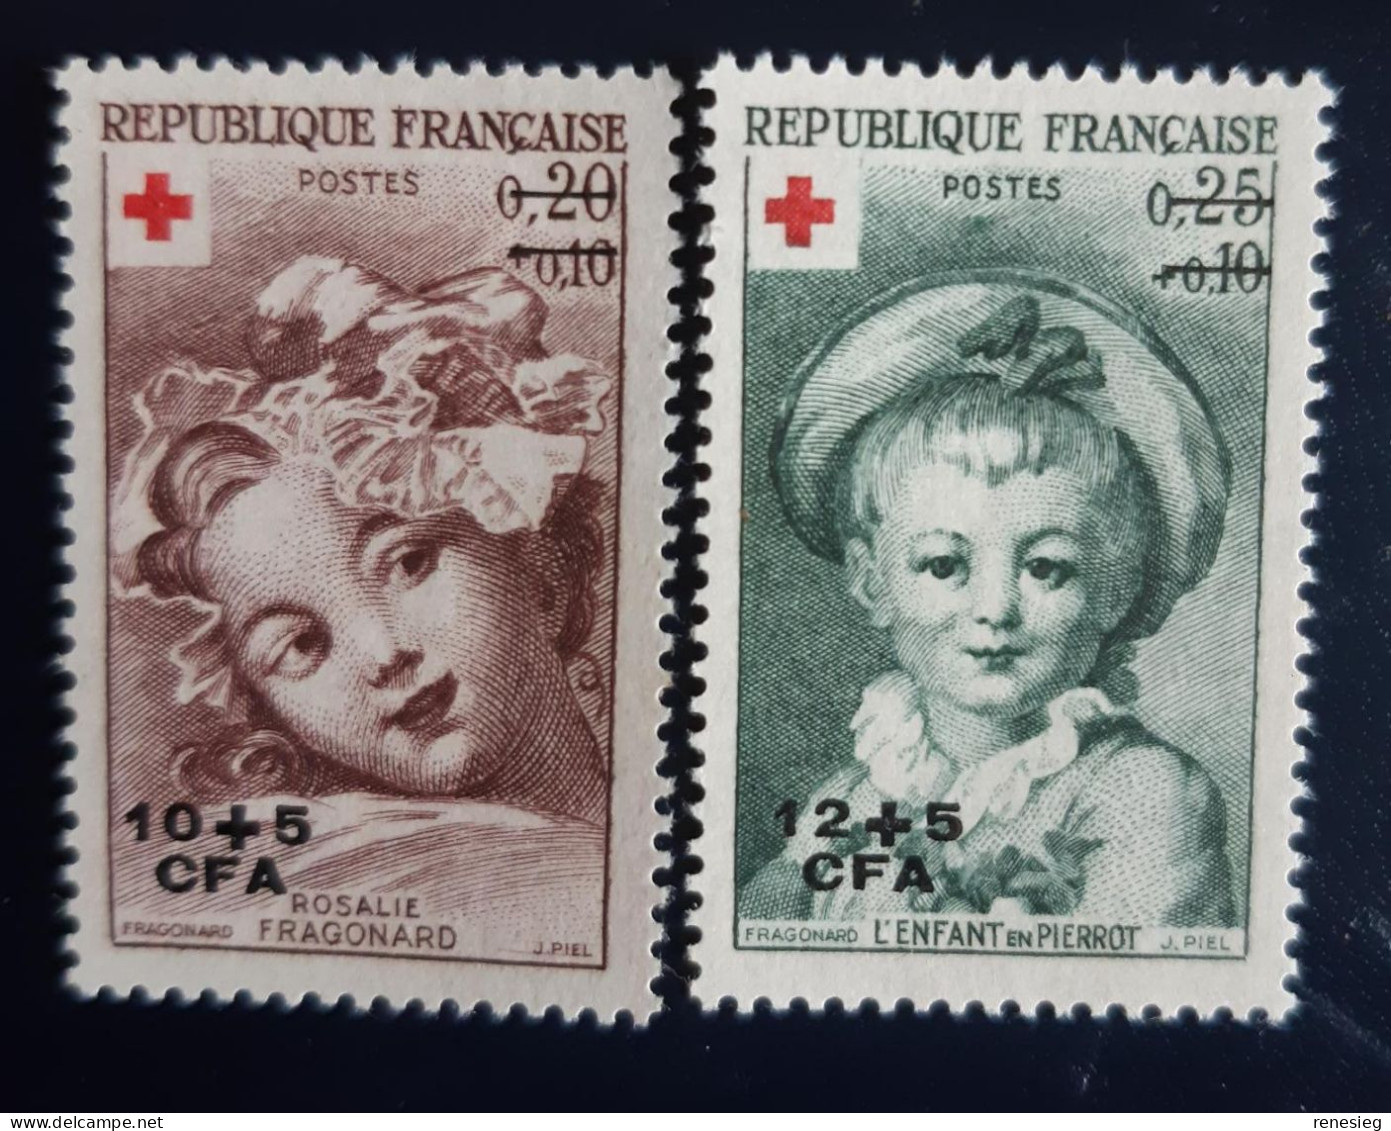 Réunion 1962 Croix-Rouge Yvert 353 & 354 MH - Ongebruikt